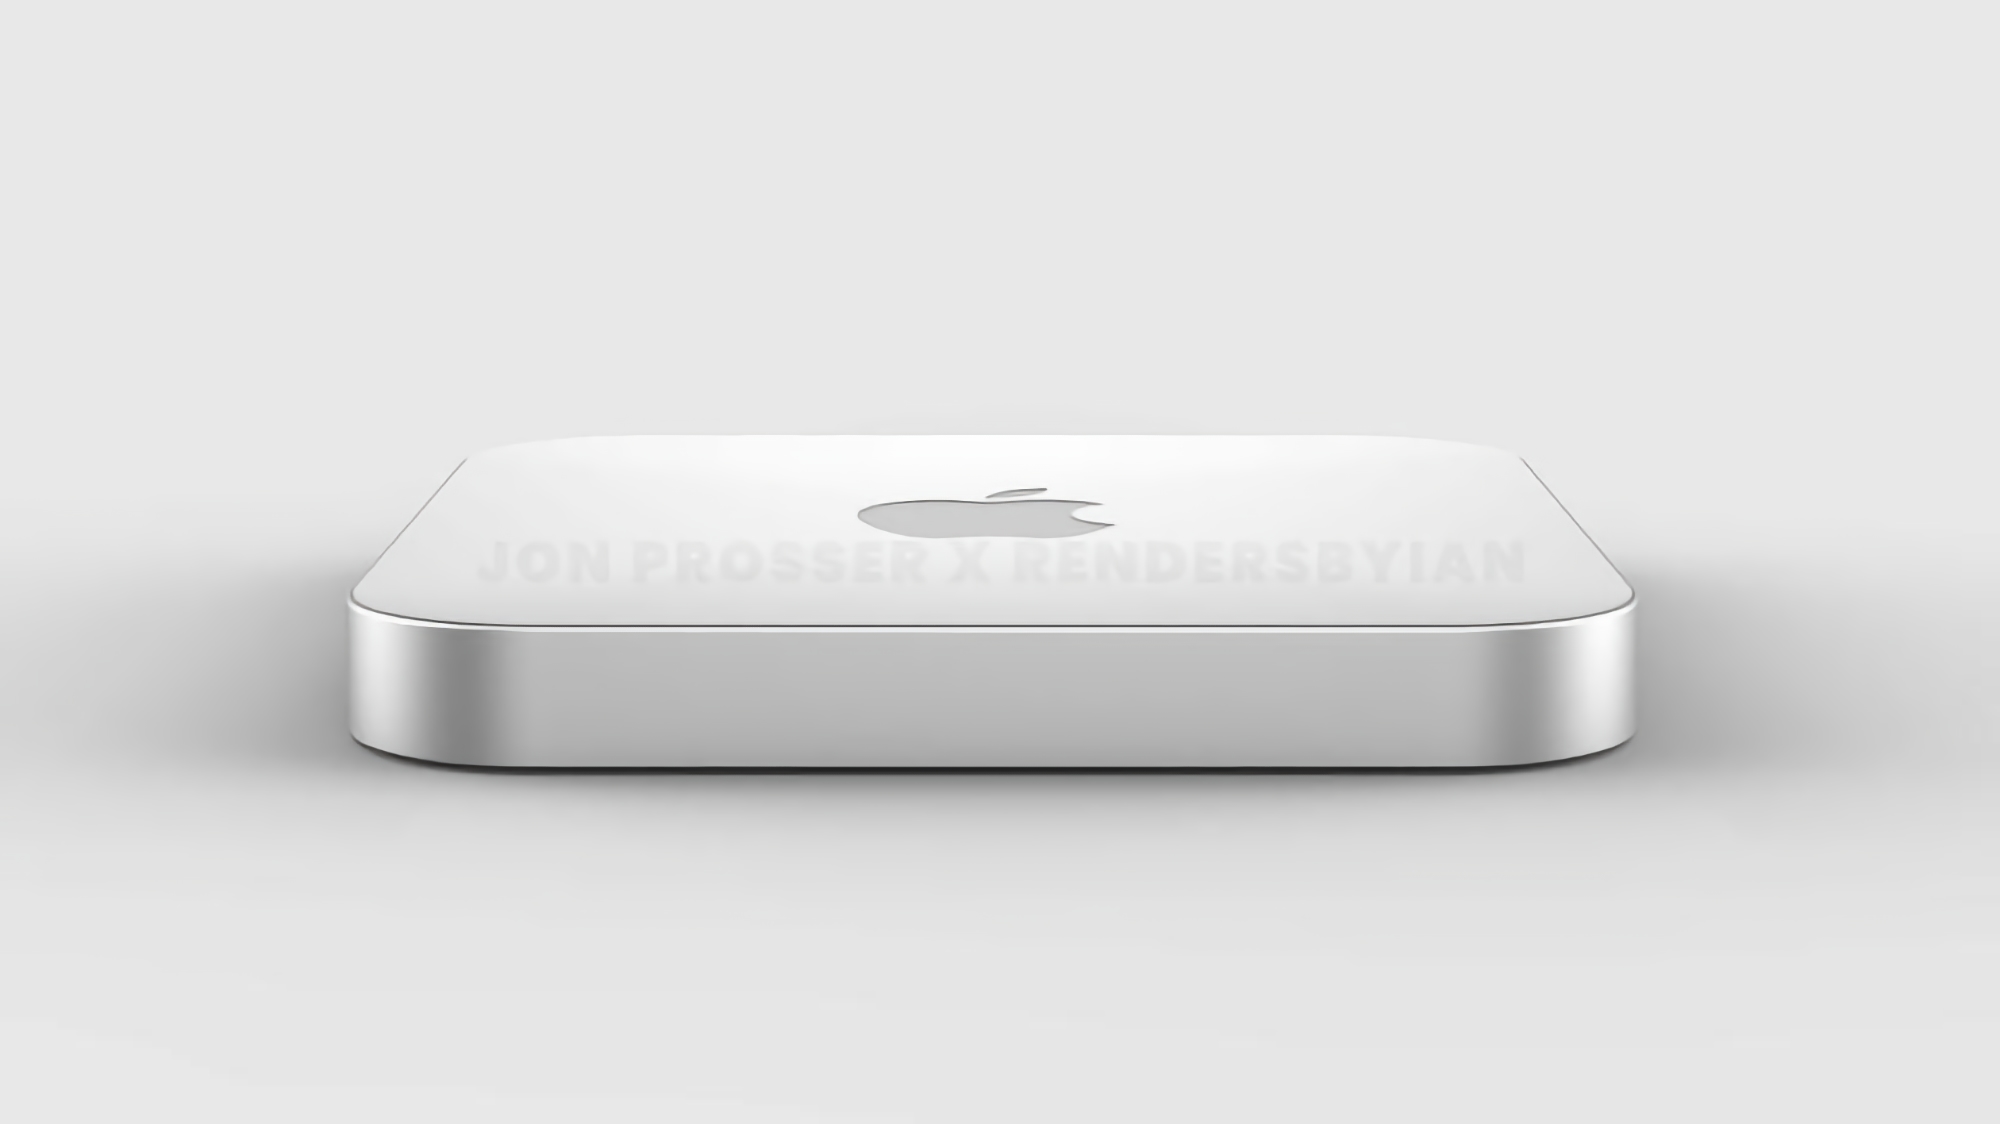 Insider: Apple planea presentar una nueva Mac mini con chips M1 Pro y M1 Max en la primavera